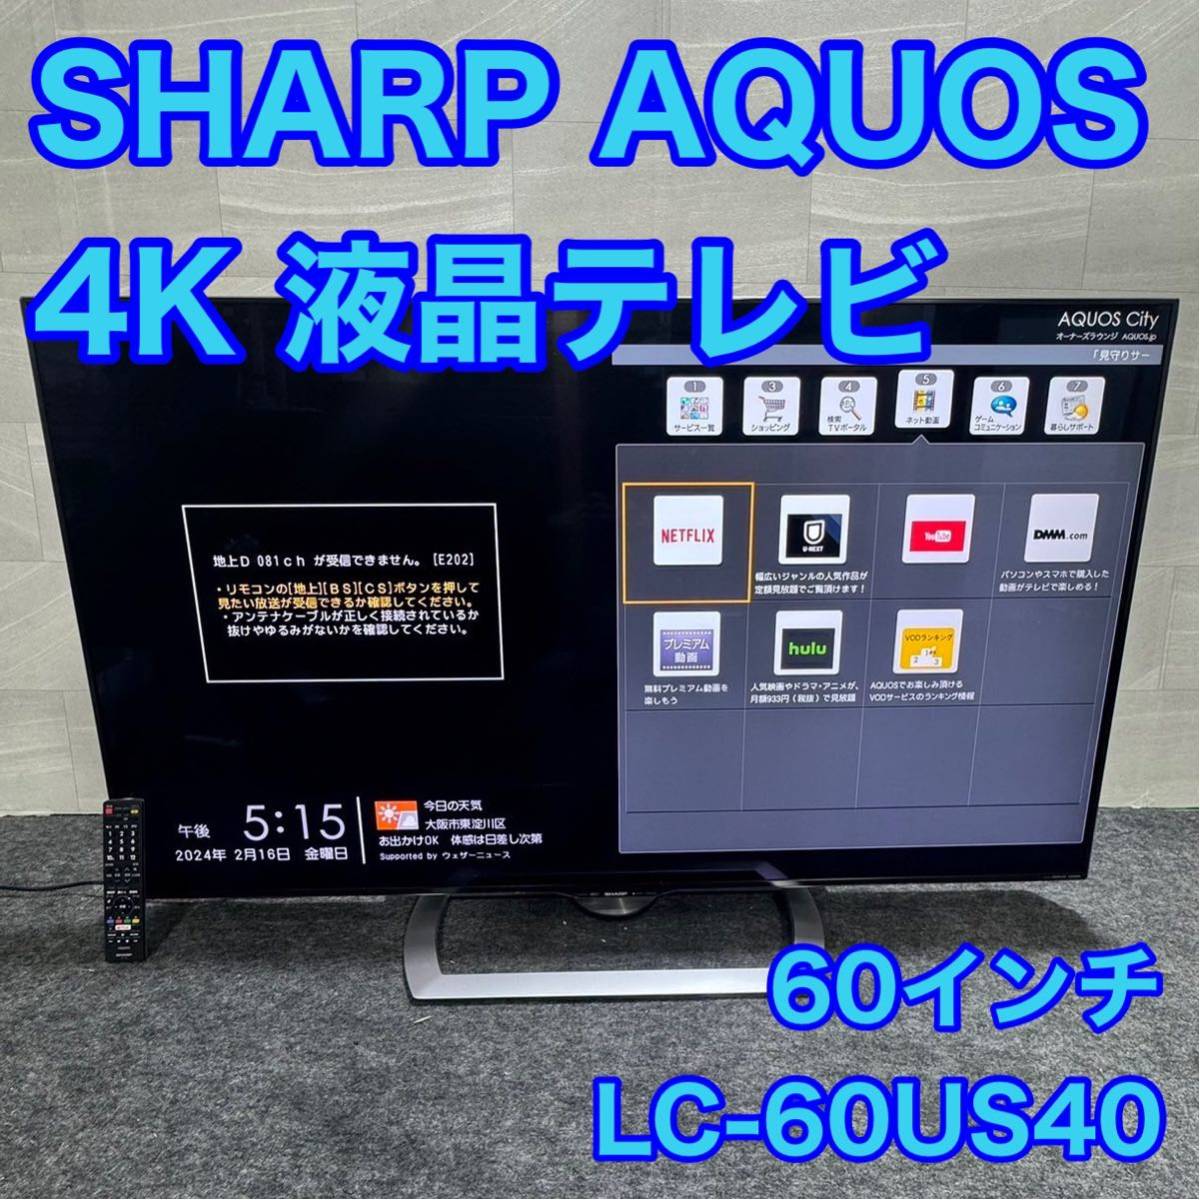 SHARP AQUOS US US40 LC-60US40 リモコン付ジャンク - テレビ